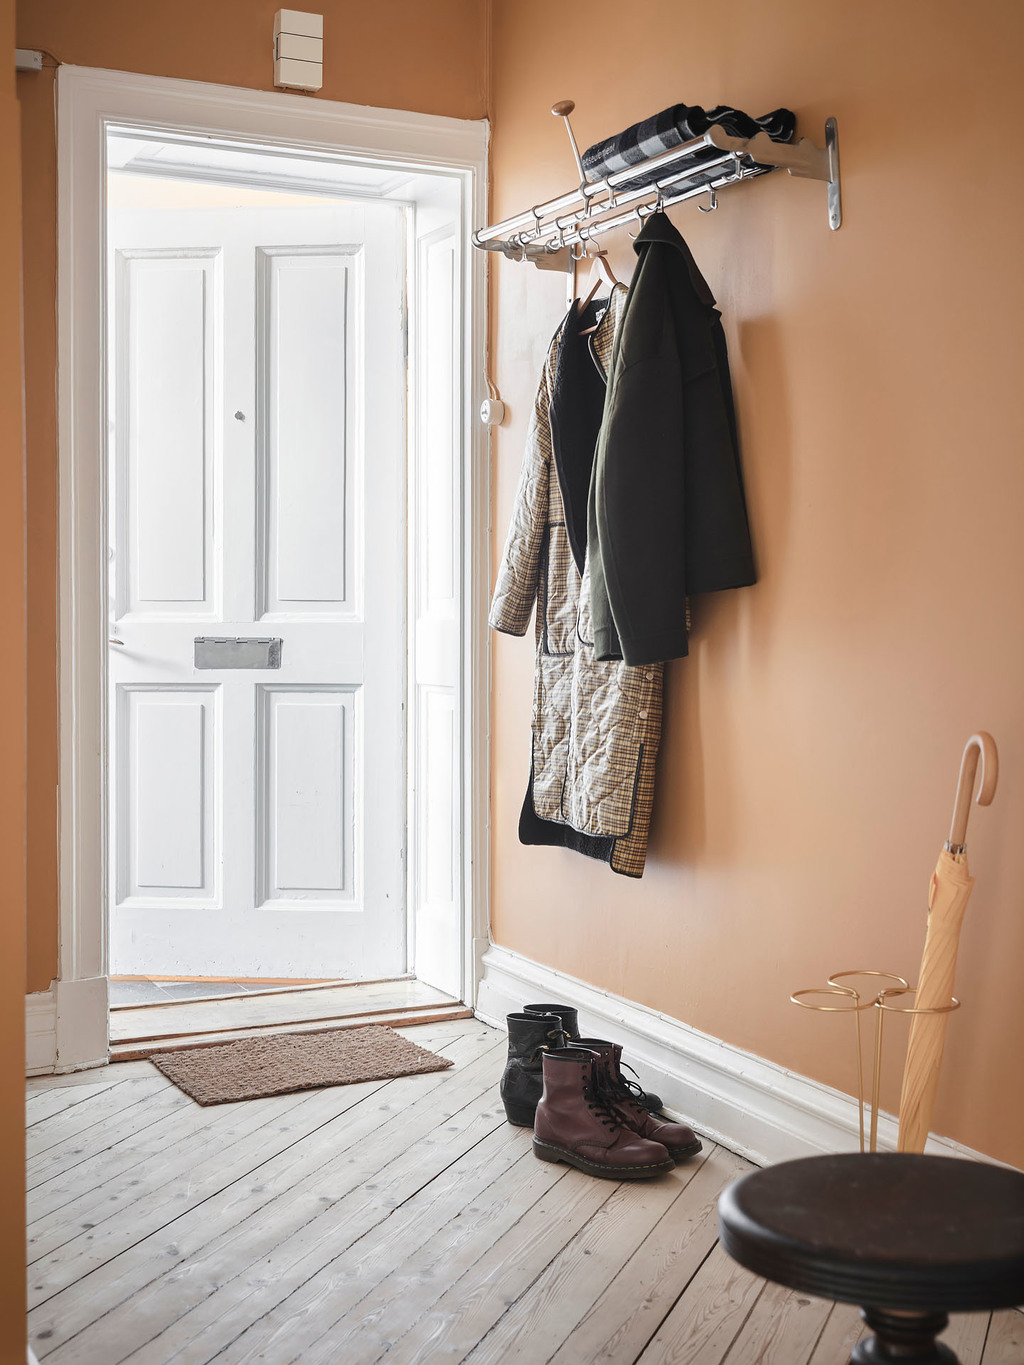 Lối vào căn hộ được sơn mới với gam màu trắng cho cánh cửa và màu cam gạch trên nền tường tươi sáng và ấm áp. Giá treo quần áo cùng với giá đỡ những chiếc ô bằng kim loại sơn mạ vàng cho lối vào gọn đẹp.